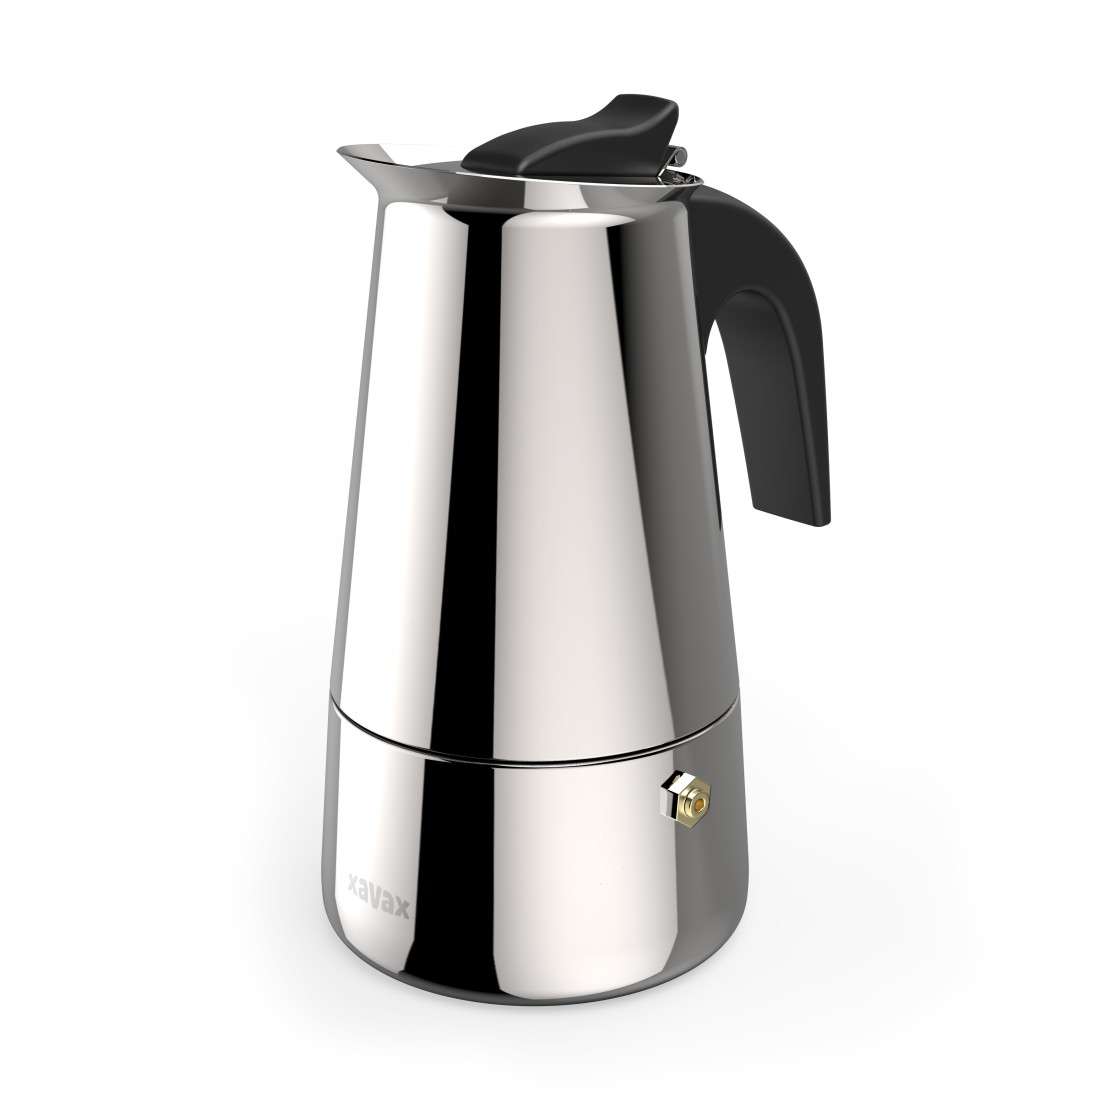 XAVAX Espressokocher aus Edelstahl für 4 Tassen, Herdkanne, u.a. Induktion, 200ml